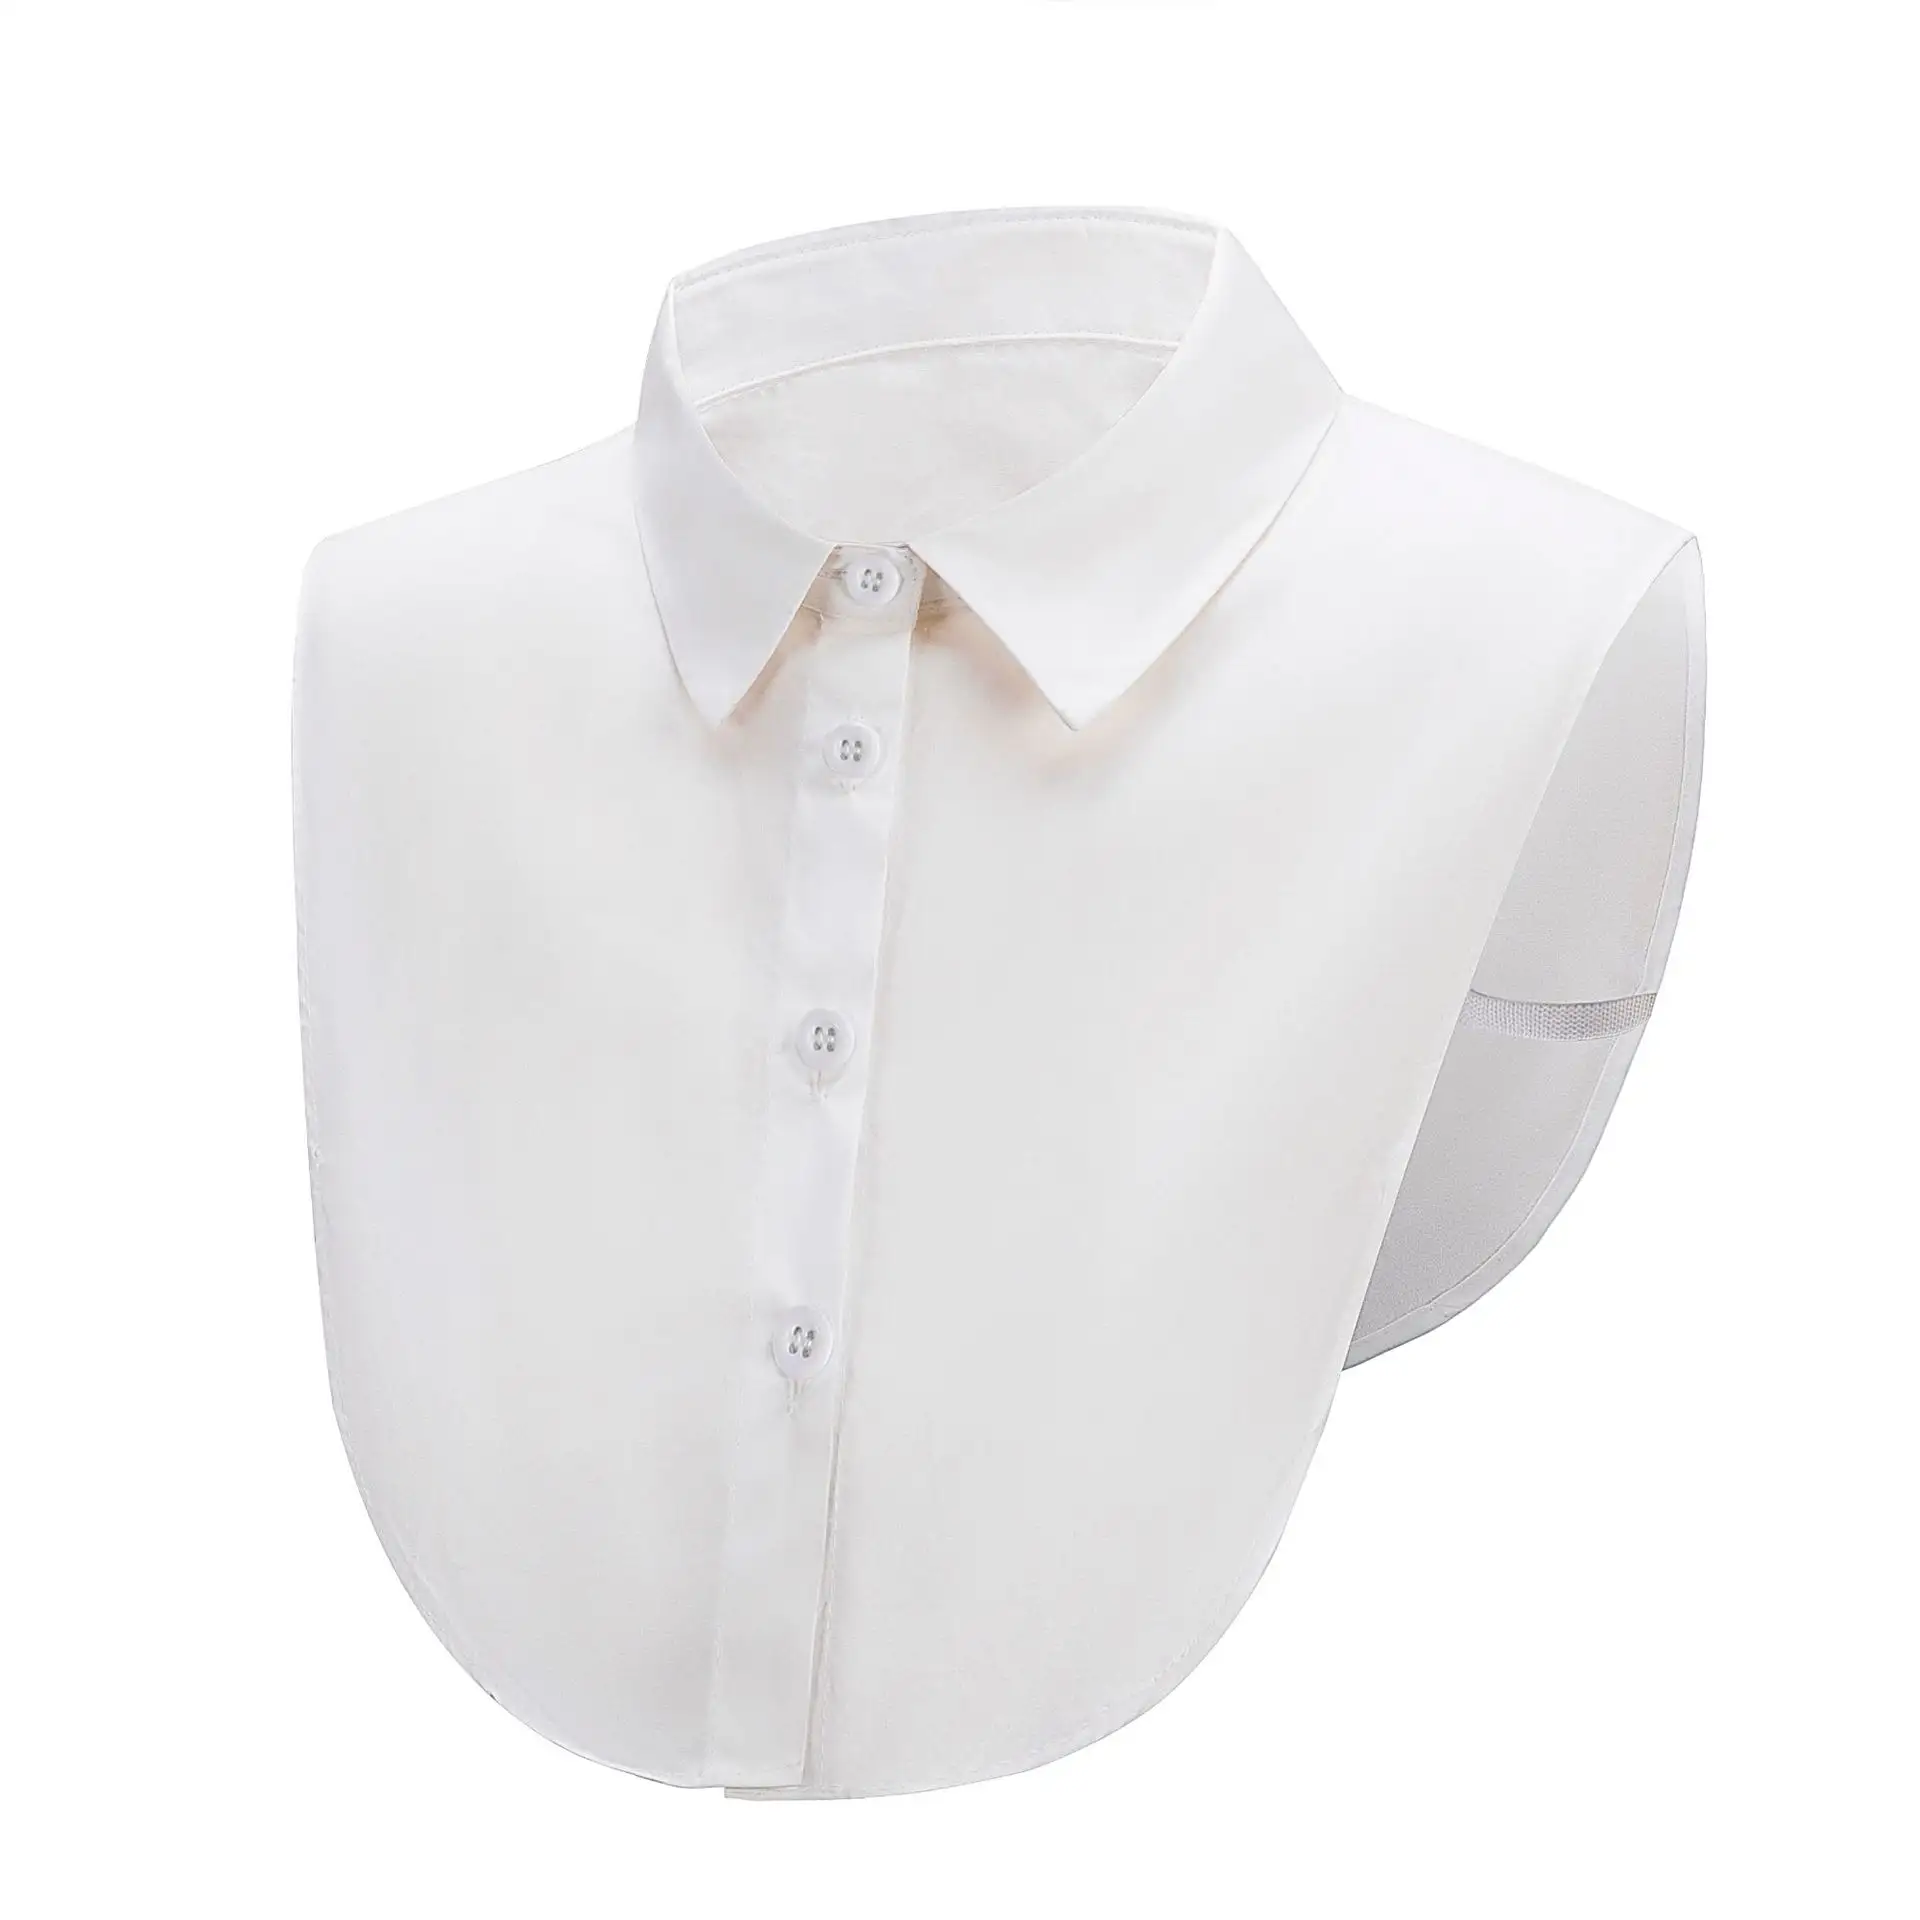 Camisa de cuello falso para hombres y mujeres, Camisa de algodón versátil, de moda, con forro falso, color blanco puntiagudo